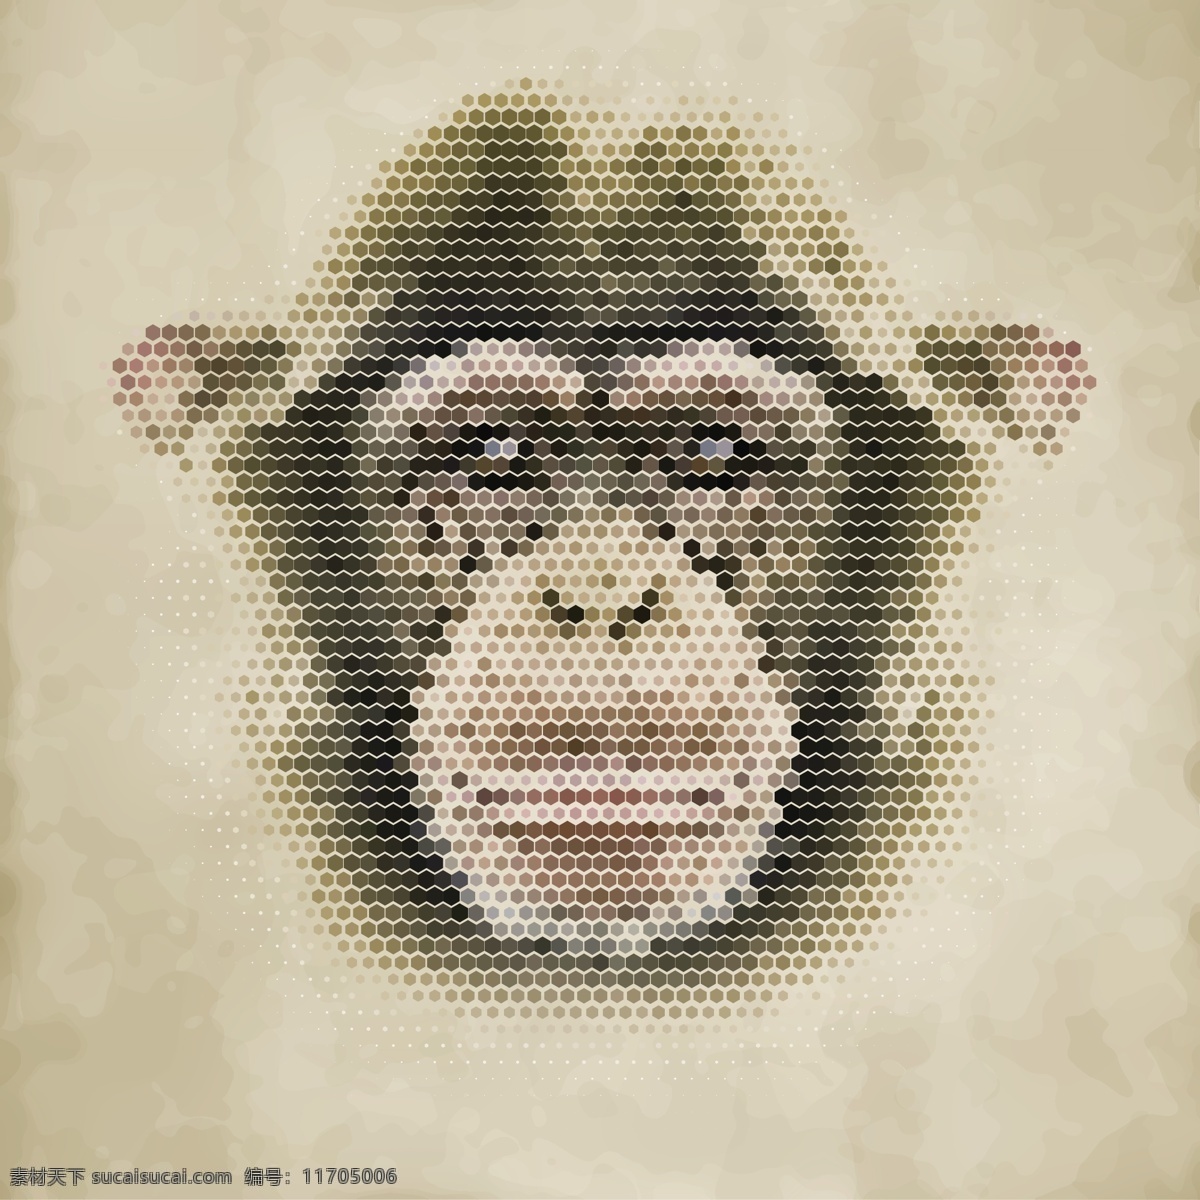 猩猩 猴子 像素动物 像素 像素艺术 马赛克 手绘 像素画 动物头像 扁平化 动物 头像 卡通动物头像 卡通头像 圆形动物头像 动物图标 圆形动物图标 矢量插画 生物世界 野生动物